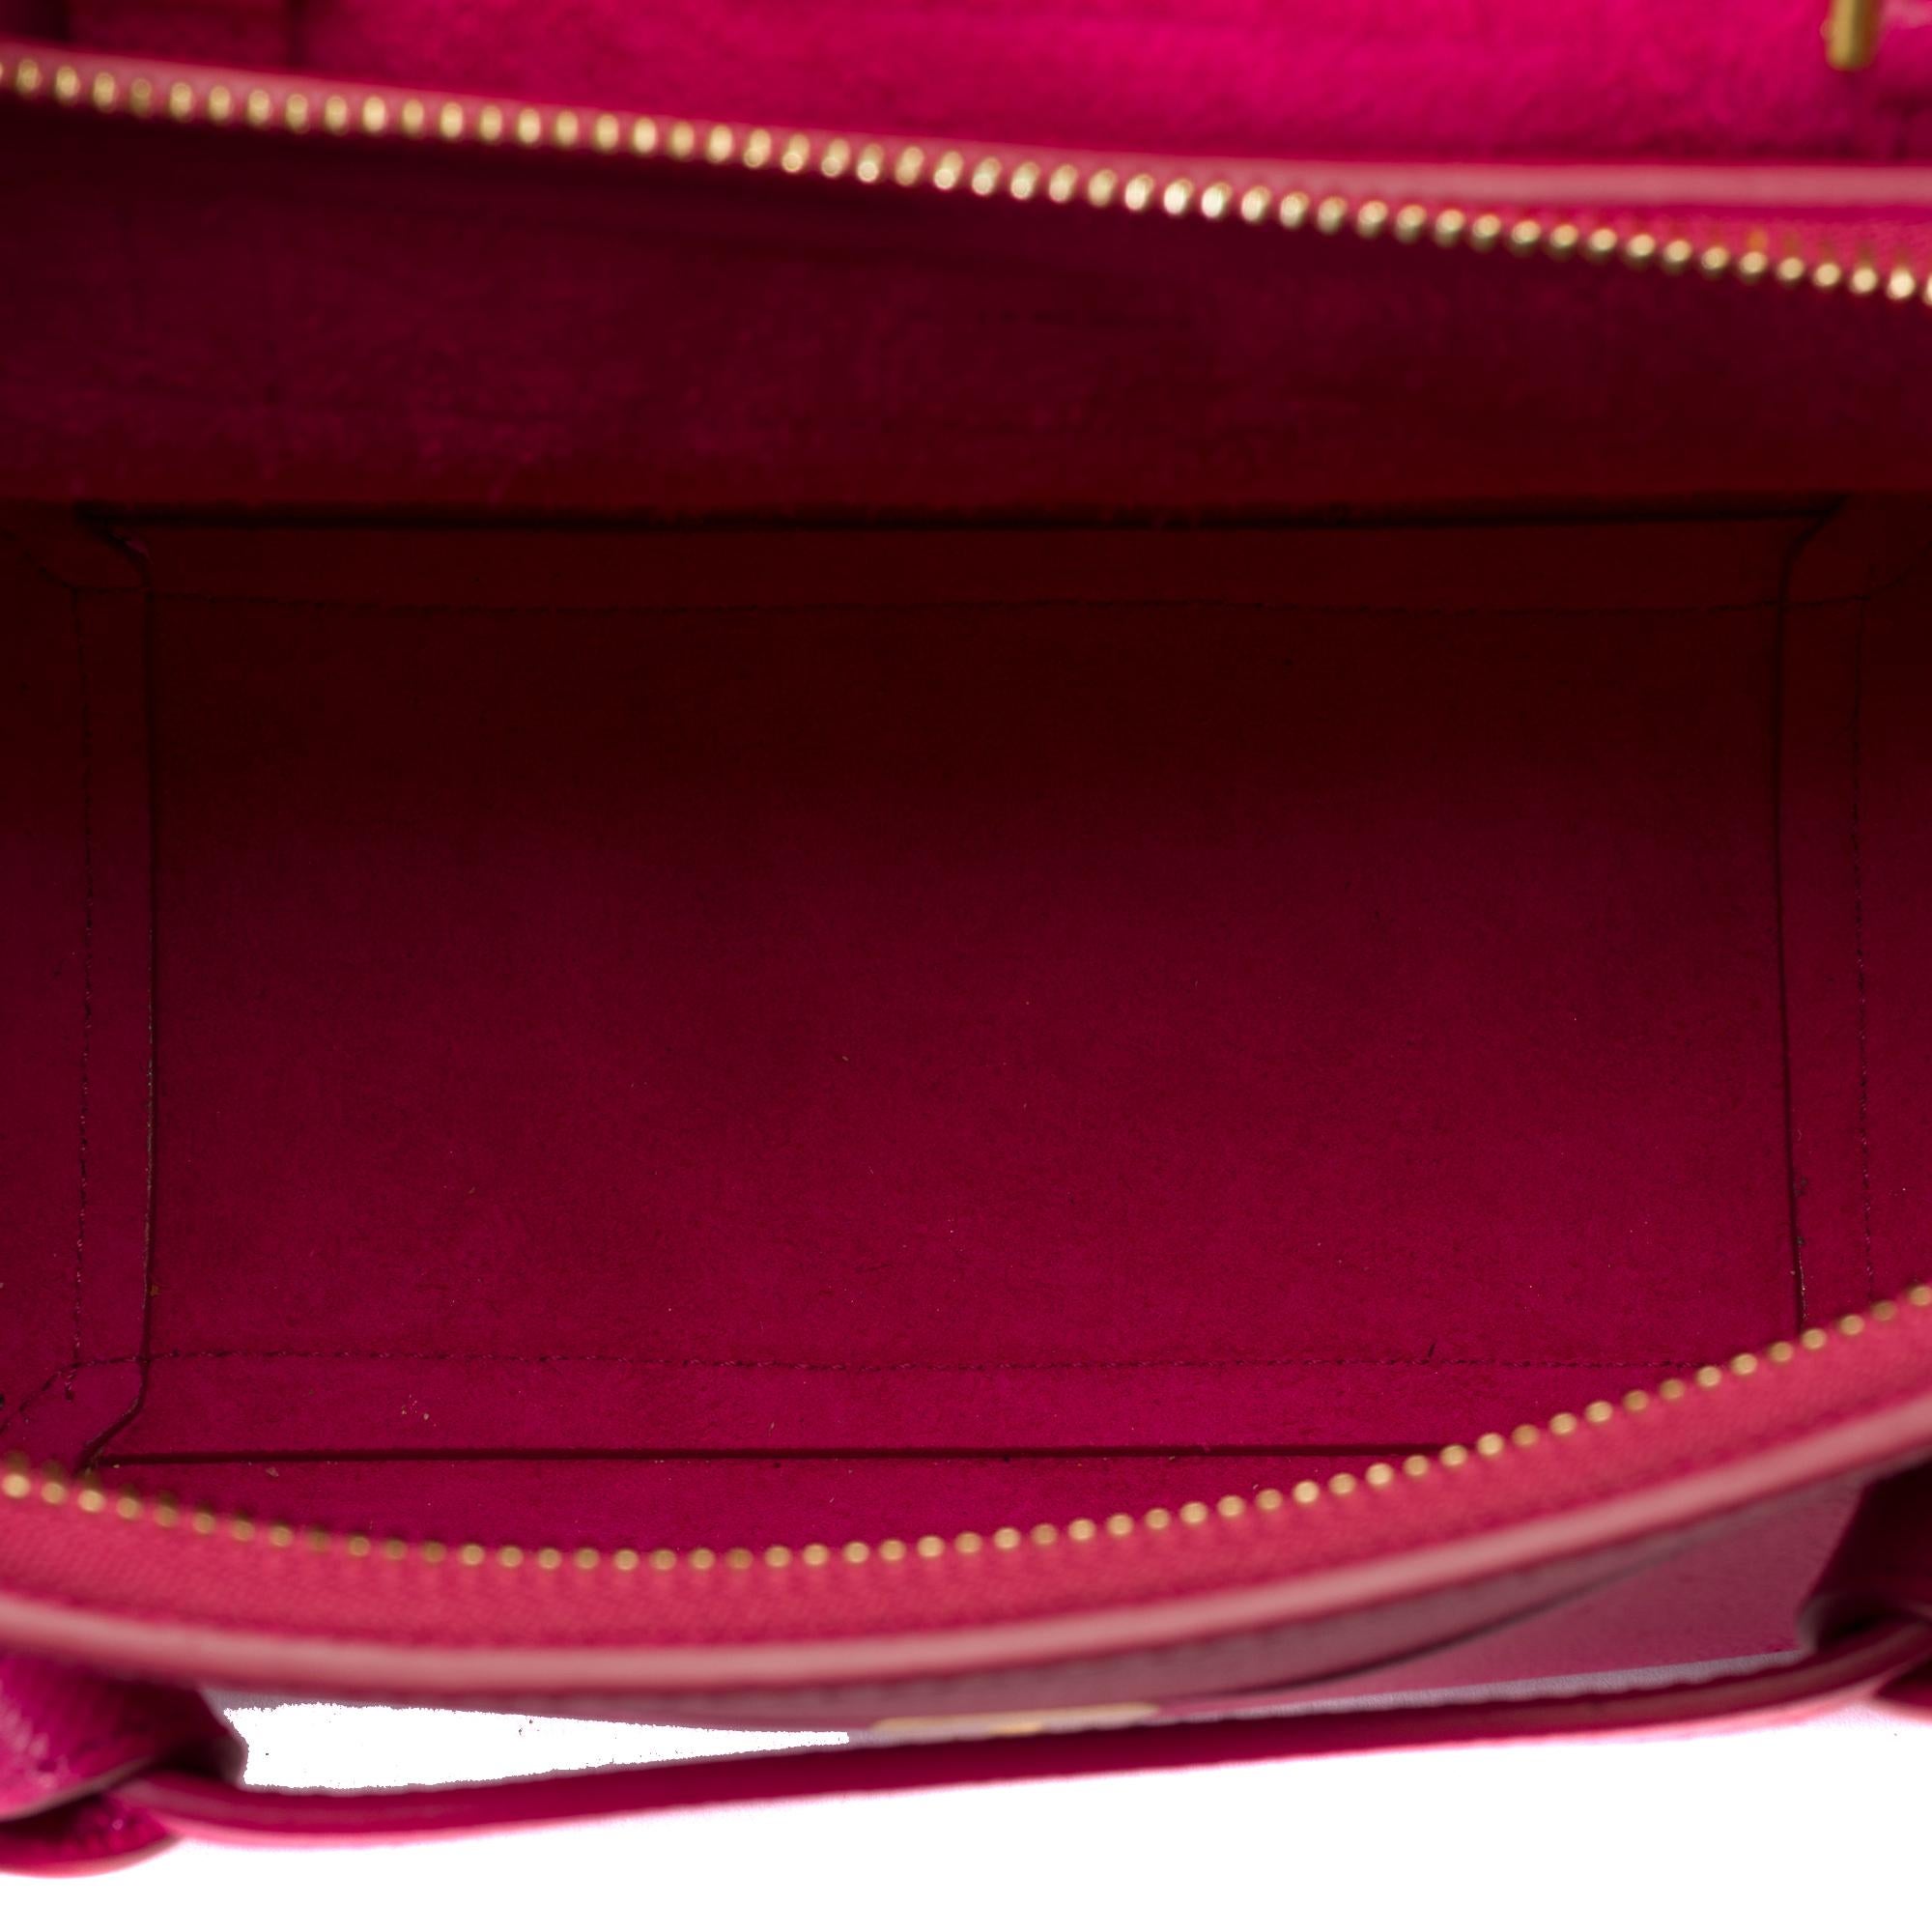 Celine Belt Nano handbag strap in pink calf leather, GHW 5